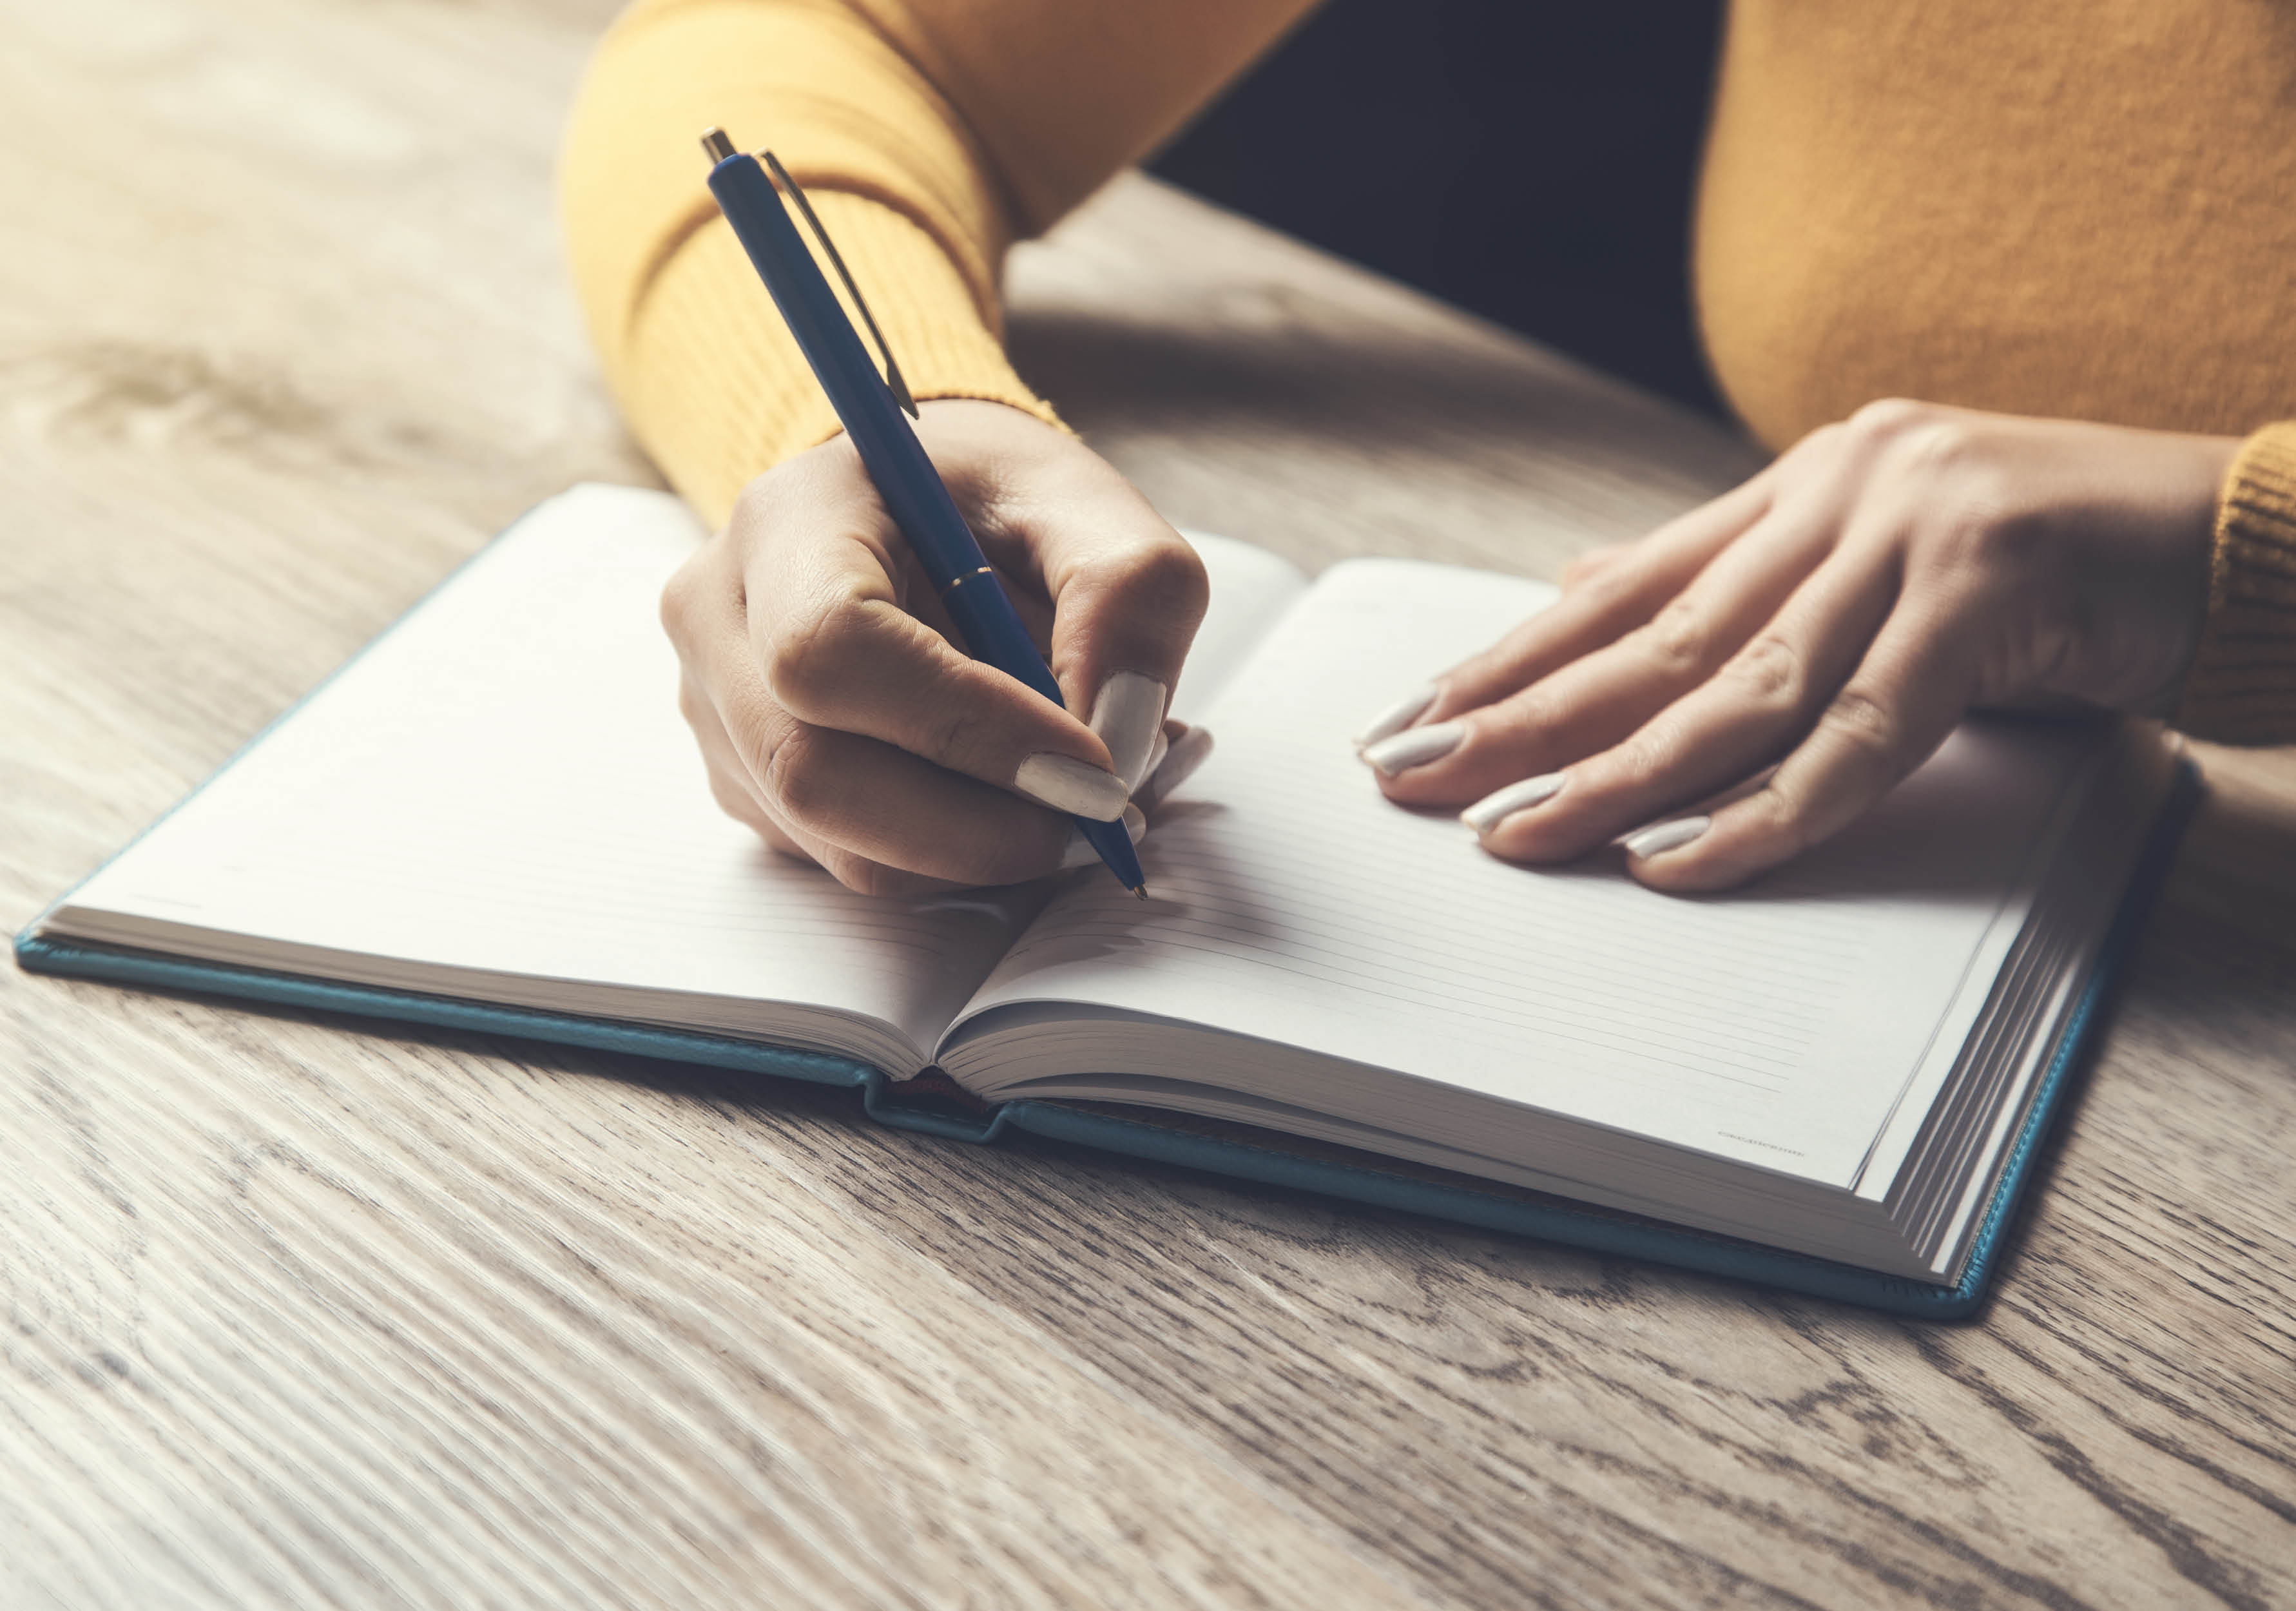 Foto som visar en persons armar och händer, personen håller i en penna och har händerna på en skrivbok och ska börja skriva